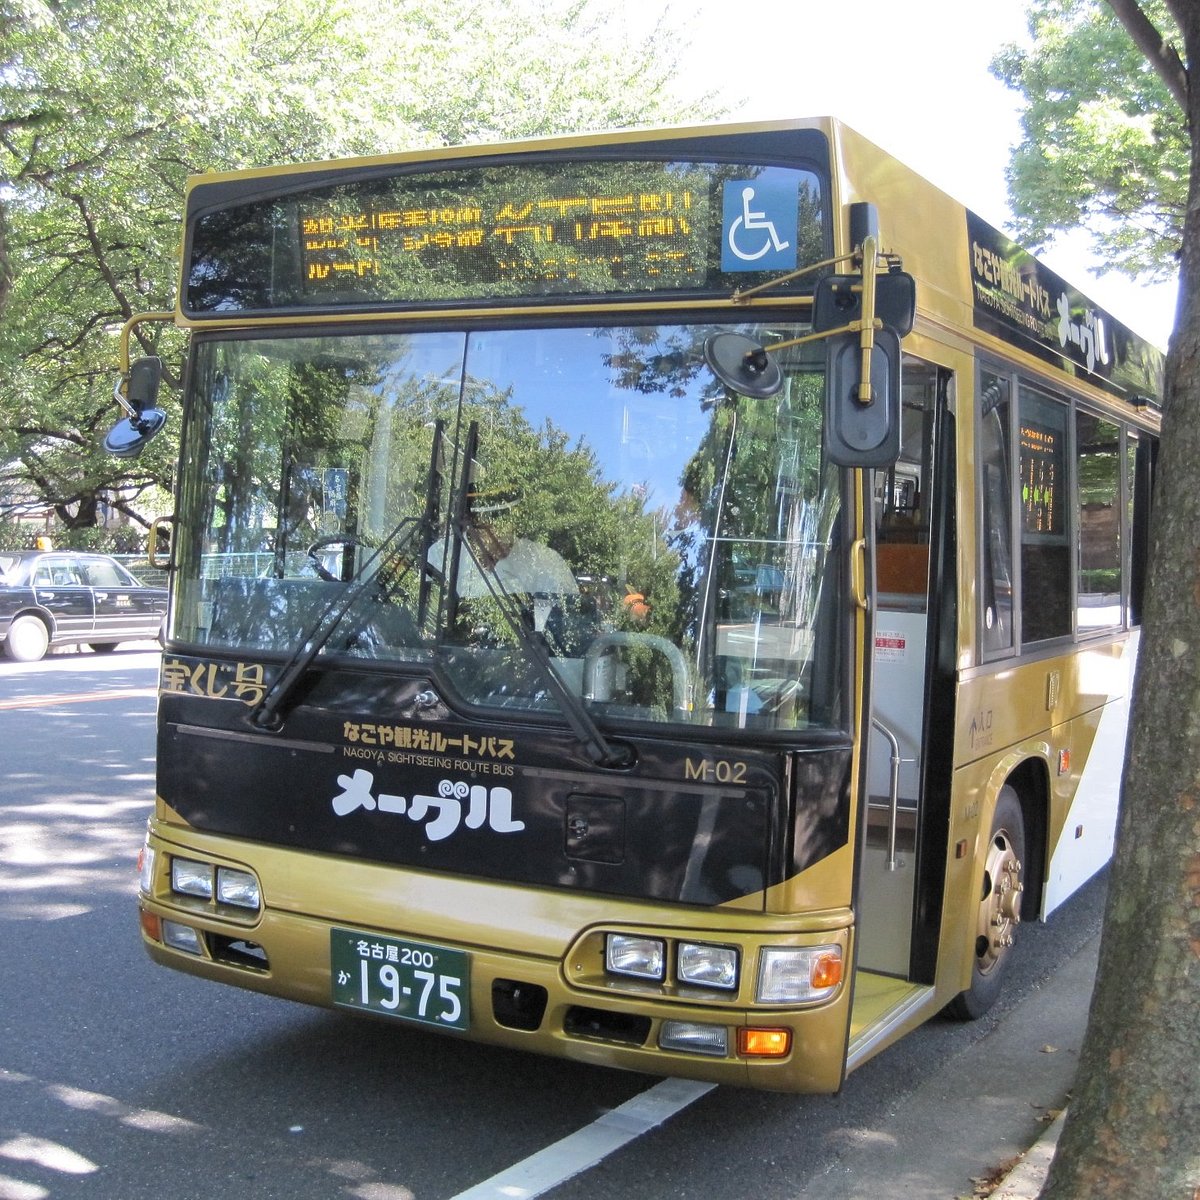 Nagoya Sightseeing Routebus Meguru - 나고야 - Nagoya Sightseeing Routebus  Meguru의 리뷰 - 트립어드바이저